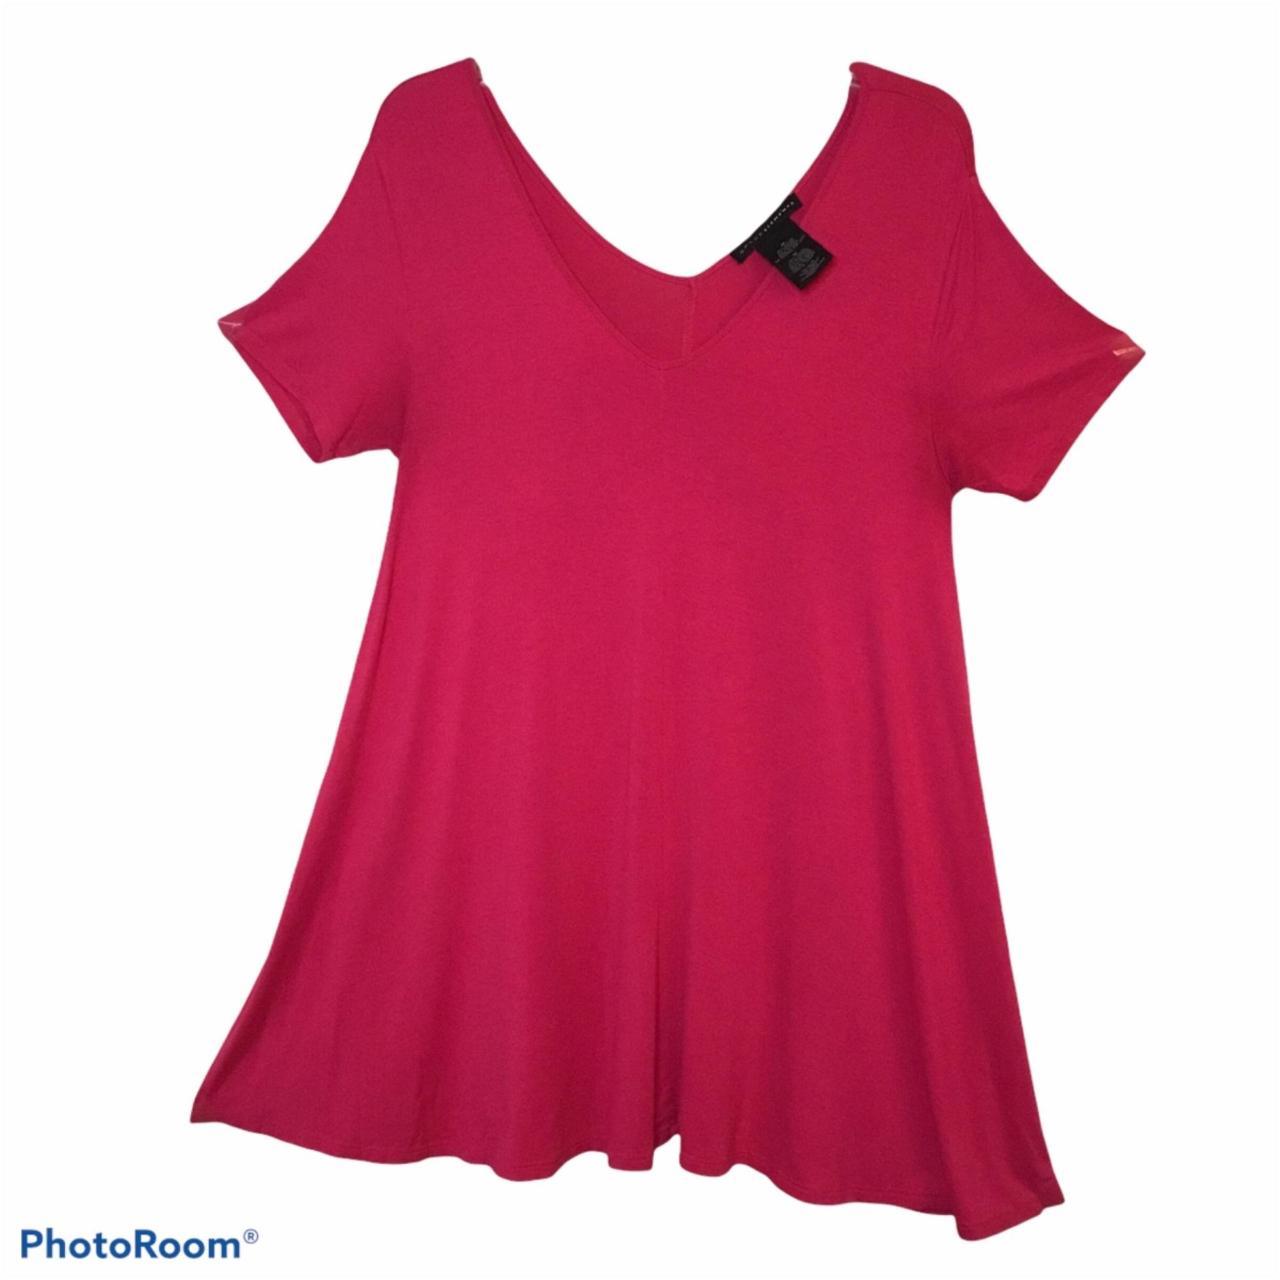 Pink Tunic Top Short Sleeves Ladies Medium - Style:... - Depop